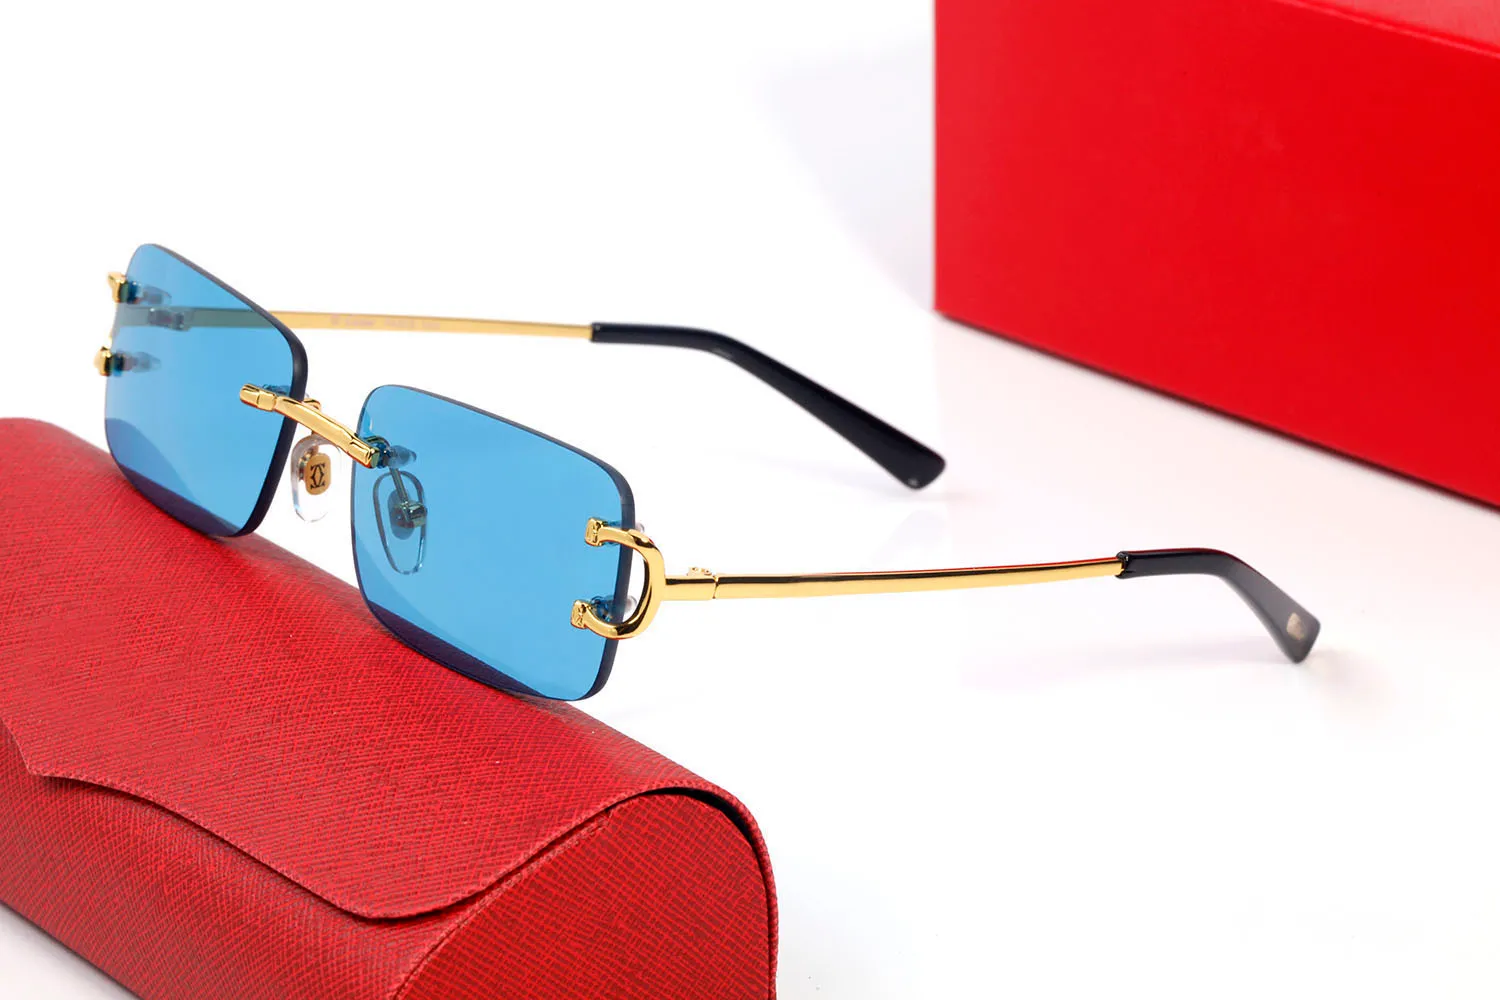 Vintage optische bril Designer zonnebril Steampunk groot vierkant frame stijl transparant blauw rood bruin zwarte lenzen brillen Com336F